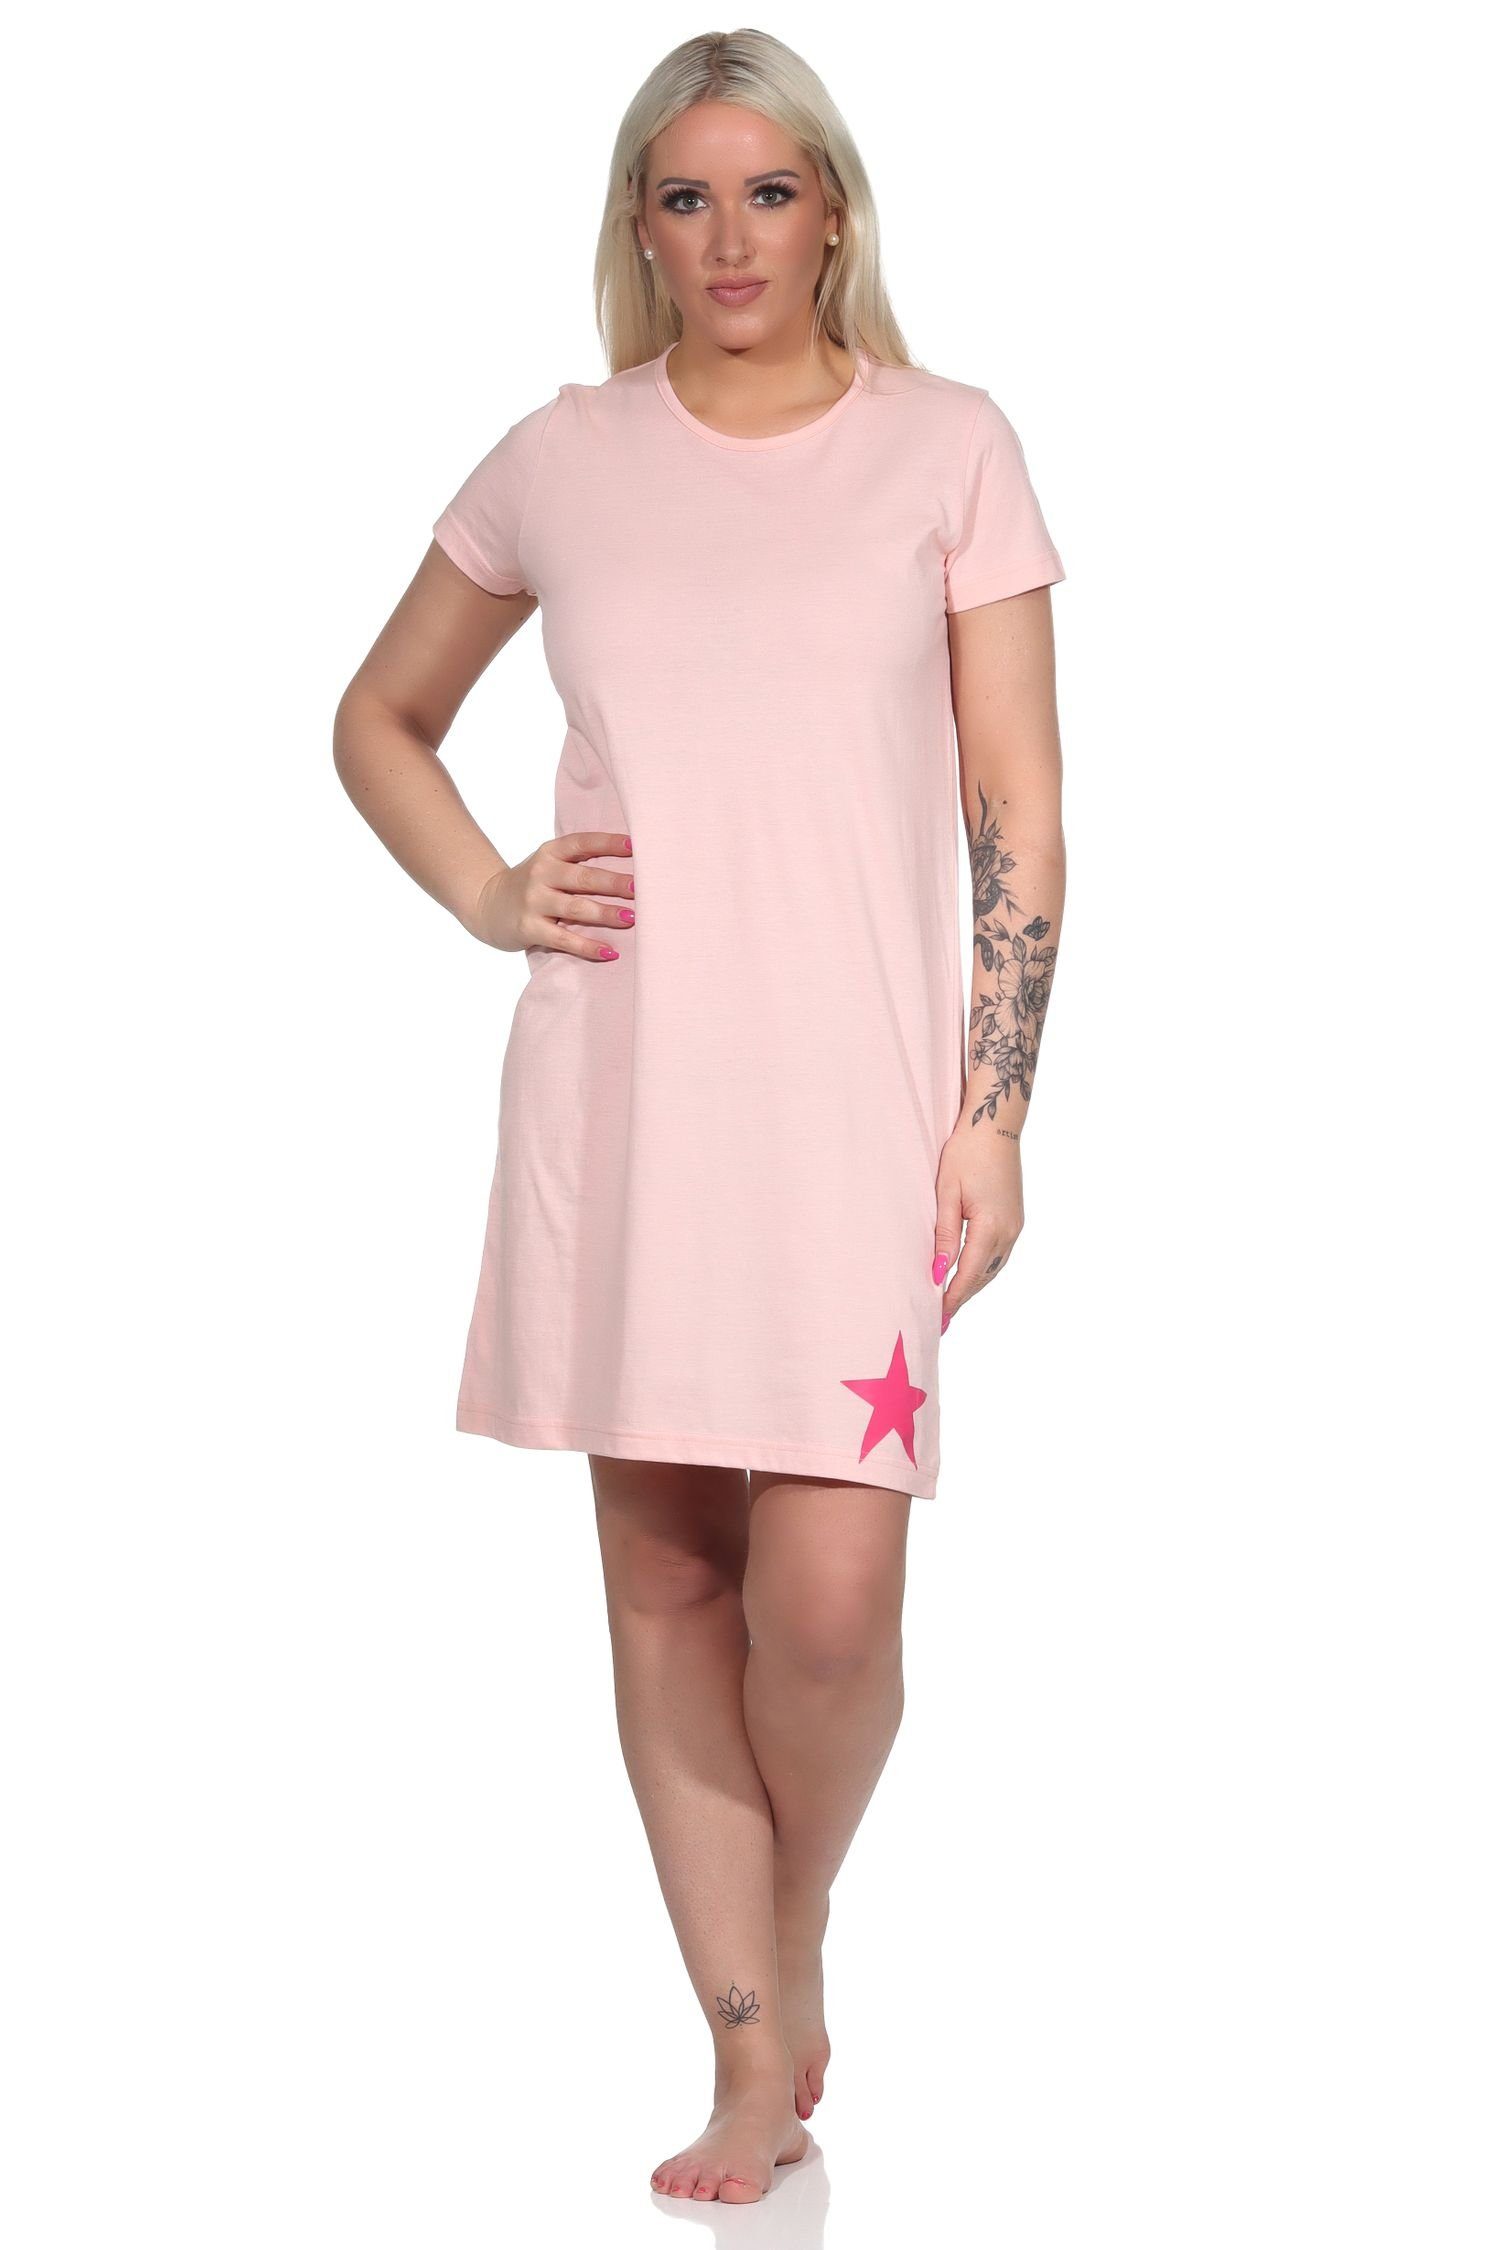 Normann Nachthemd Damen Kurznachthemd, Bigshirt mit schöner Stern-Applikation rosa | Nachthemden